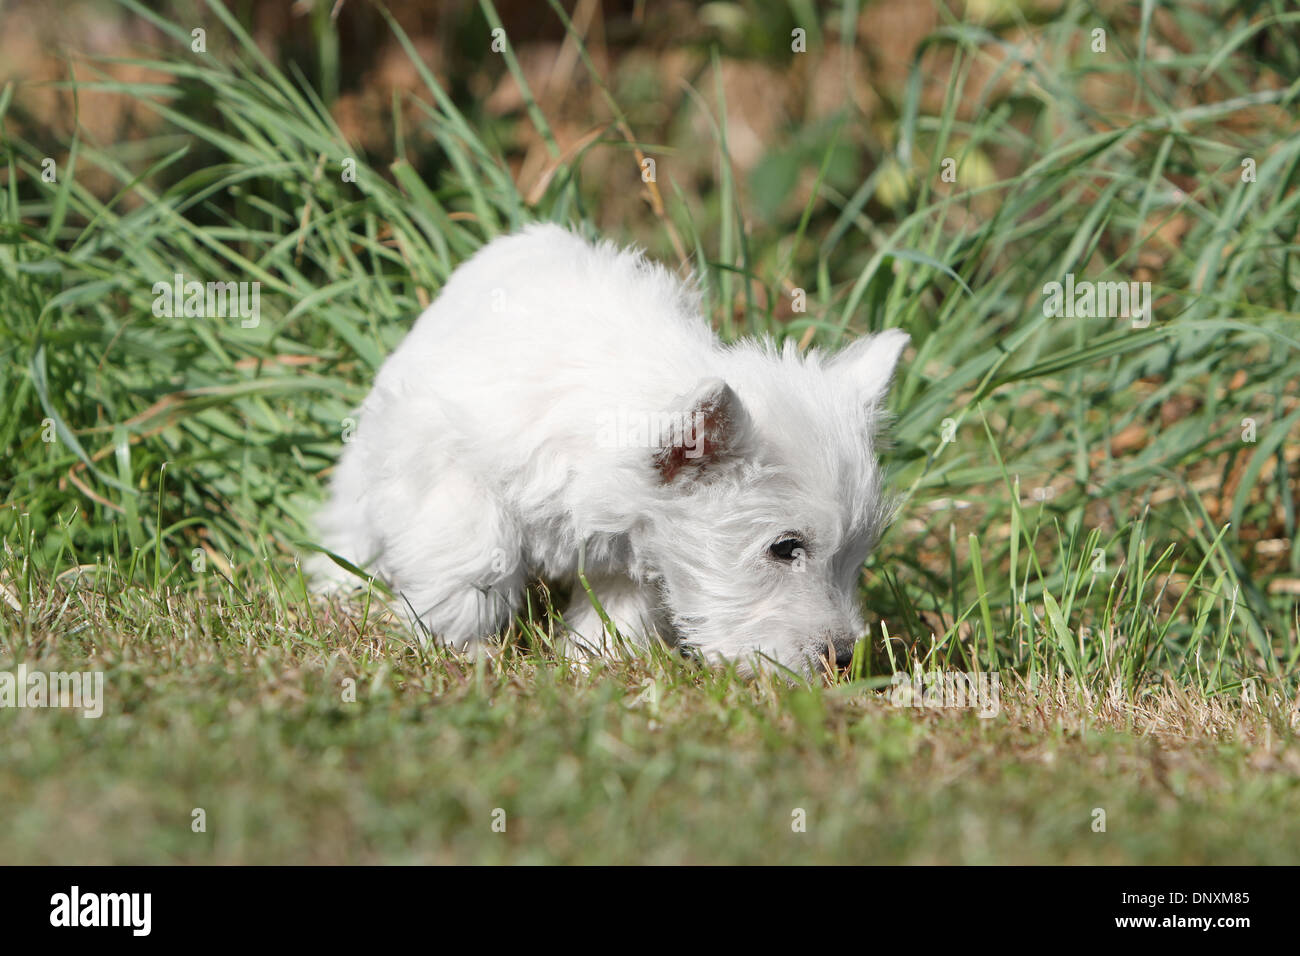 Dog West Highland White Terrier / Westie  Puppy sniffs the ground Stock Photo